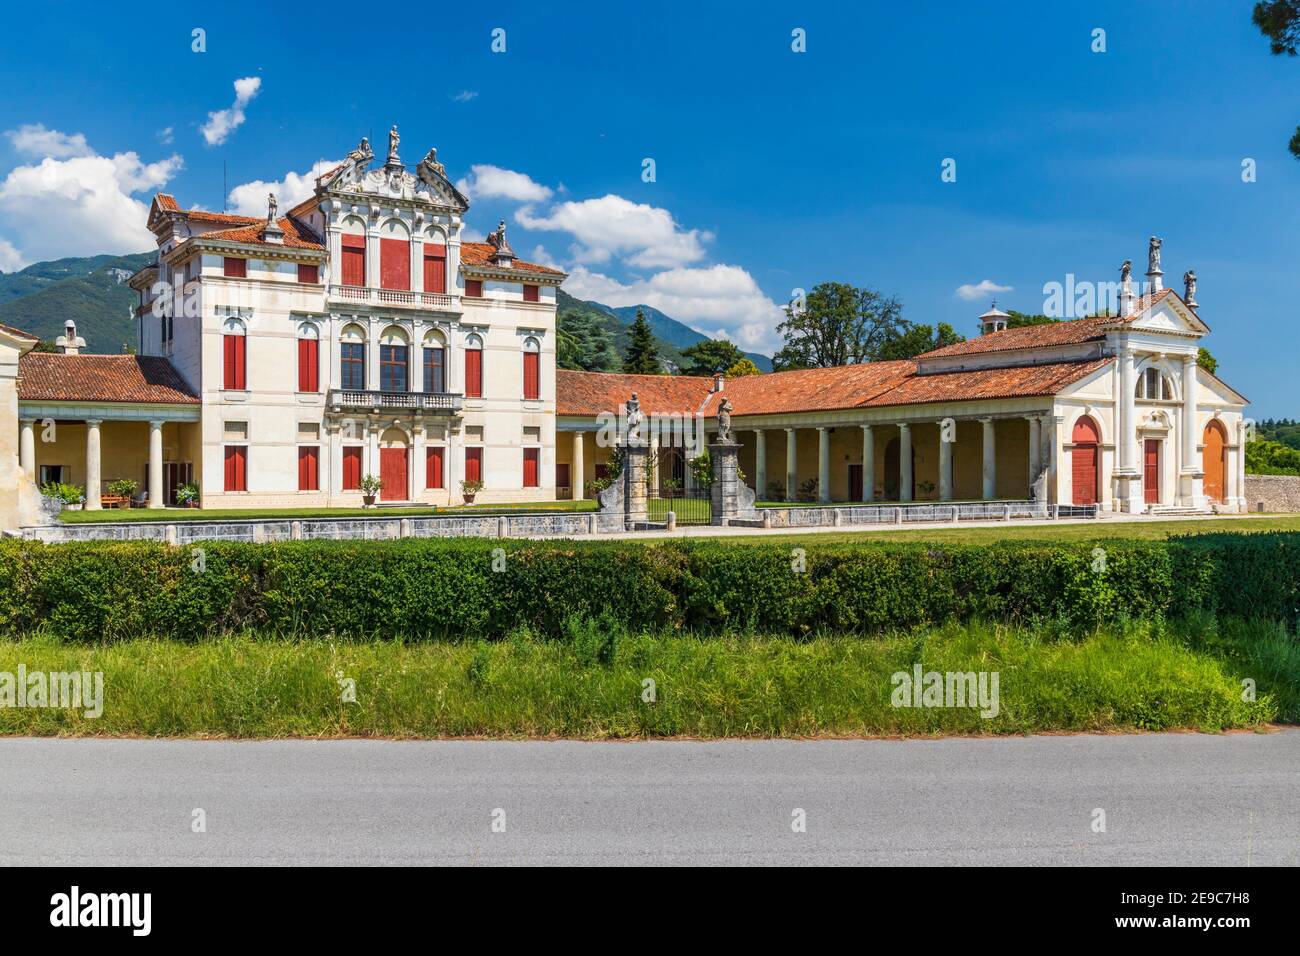 Villa Angarano in Bassano del Grappa, Veneto, Northern Italy. Stock Photo